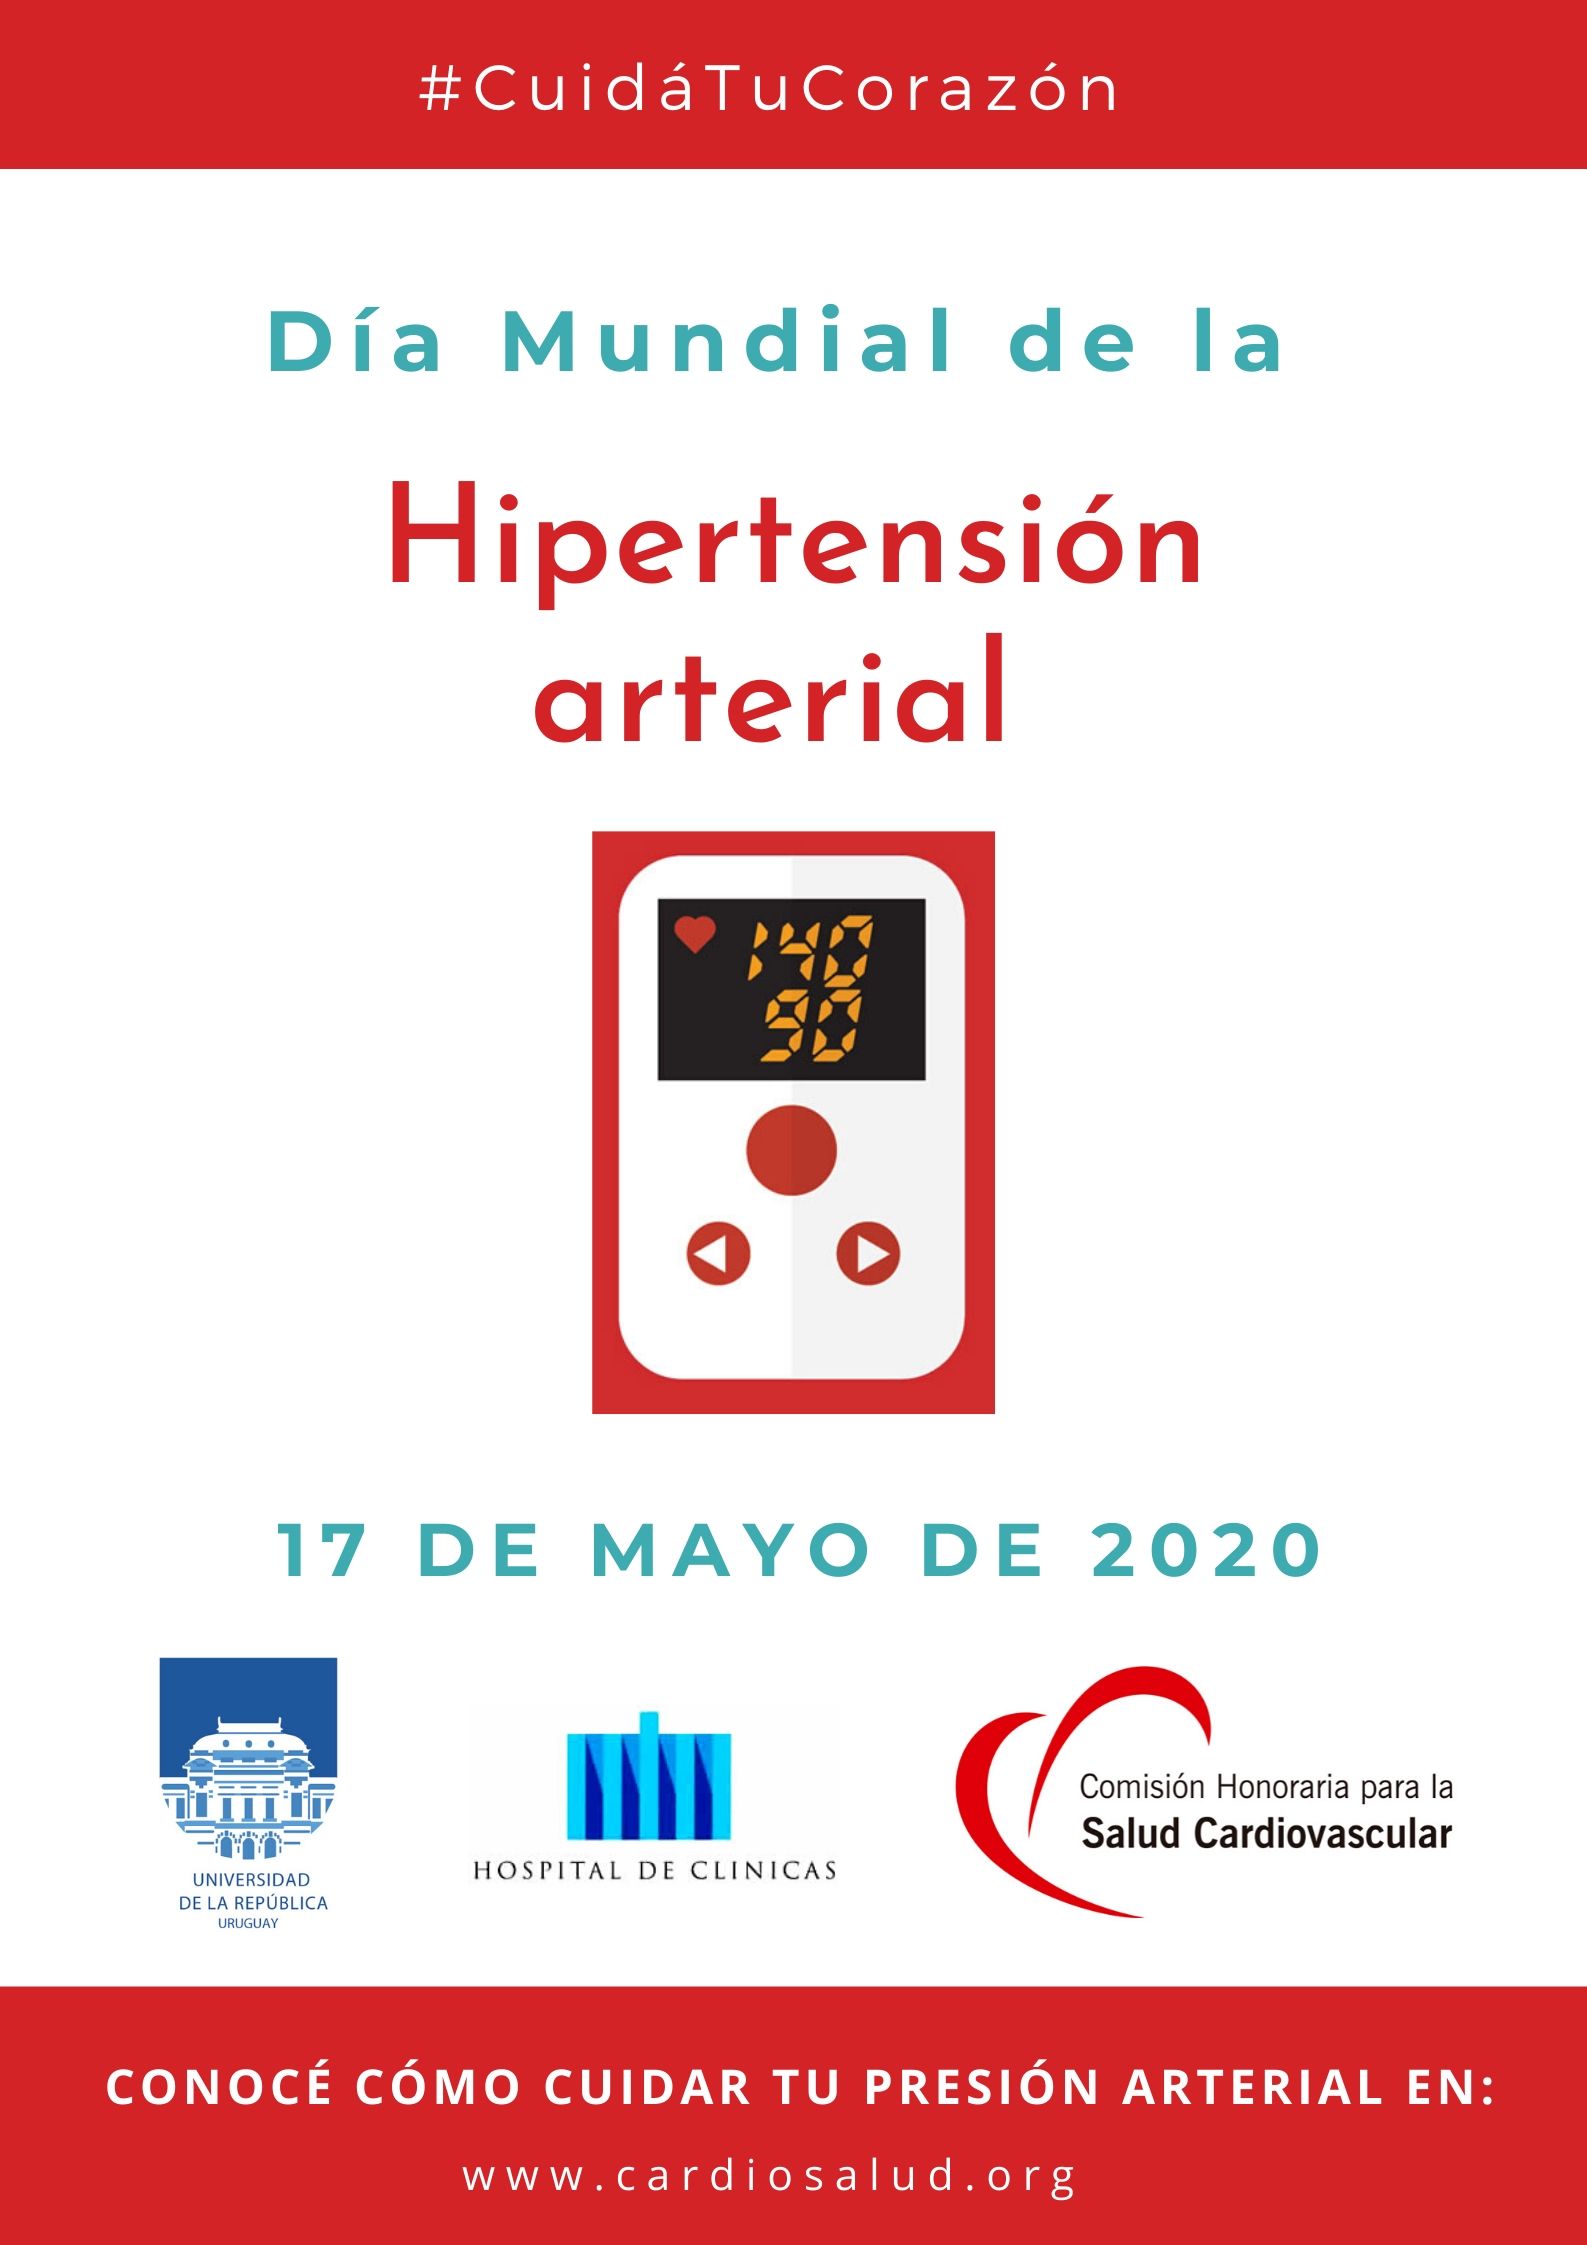 Día Mundial de la Hipertensión arterial 2020